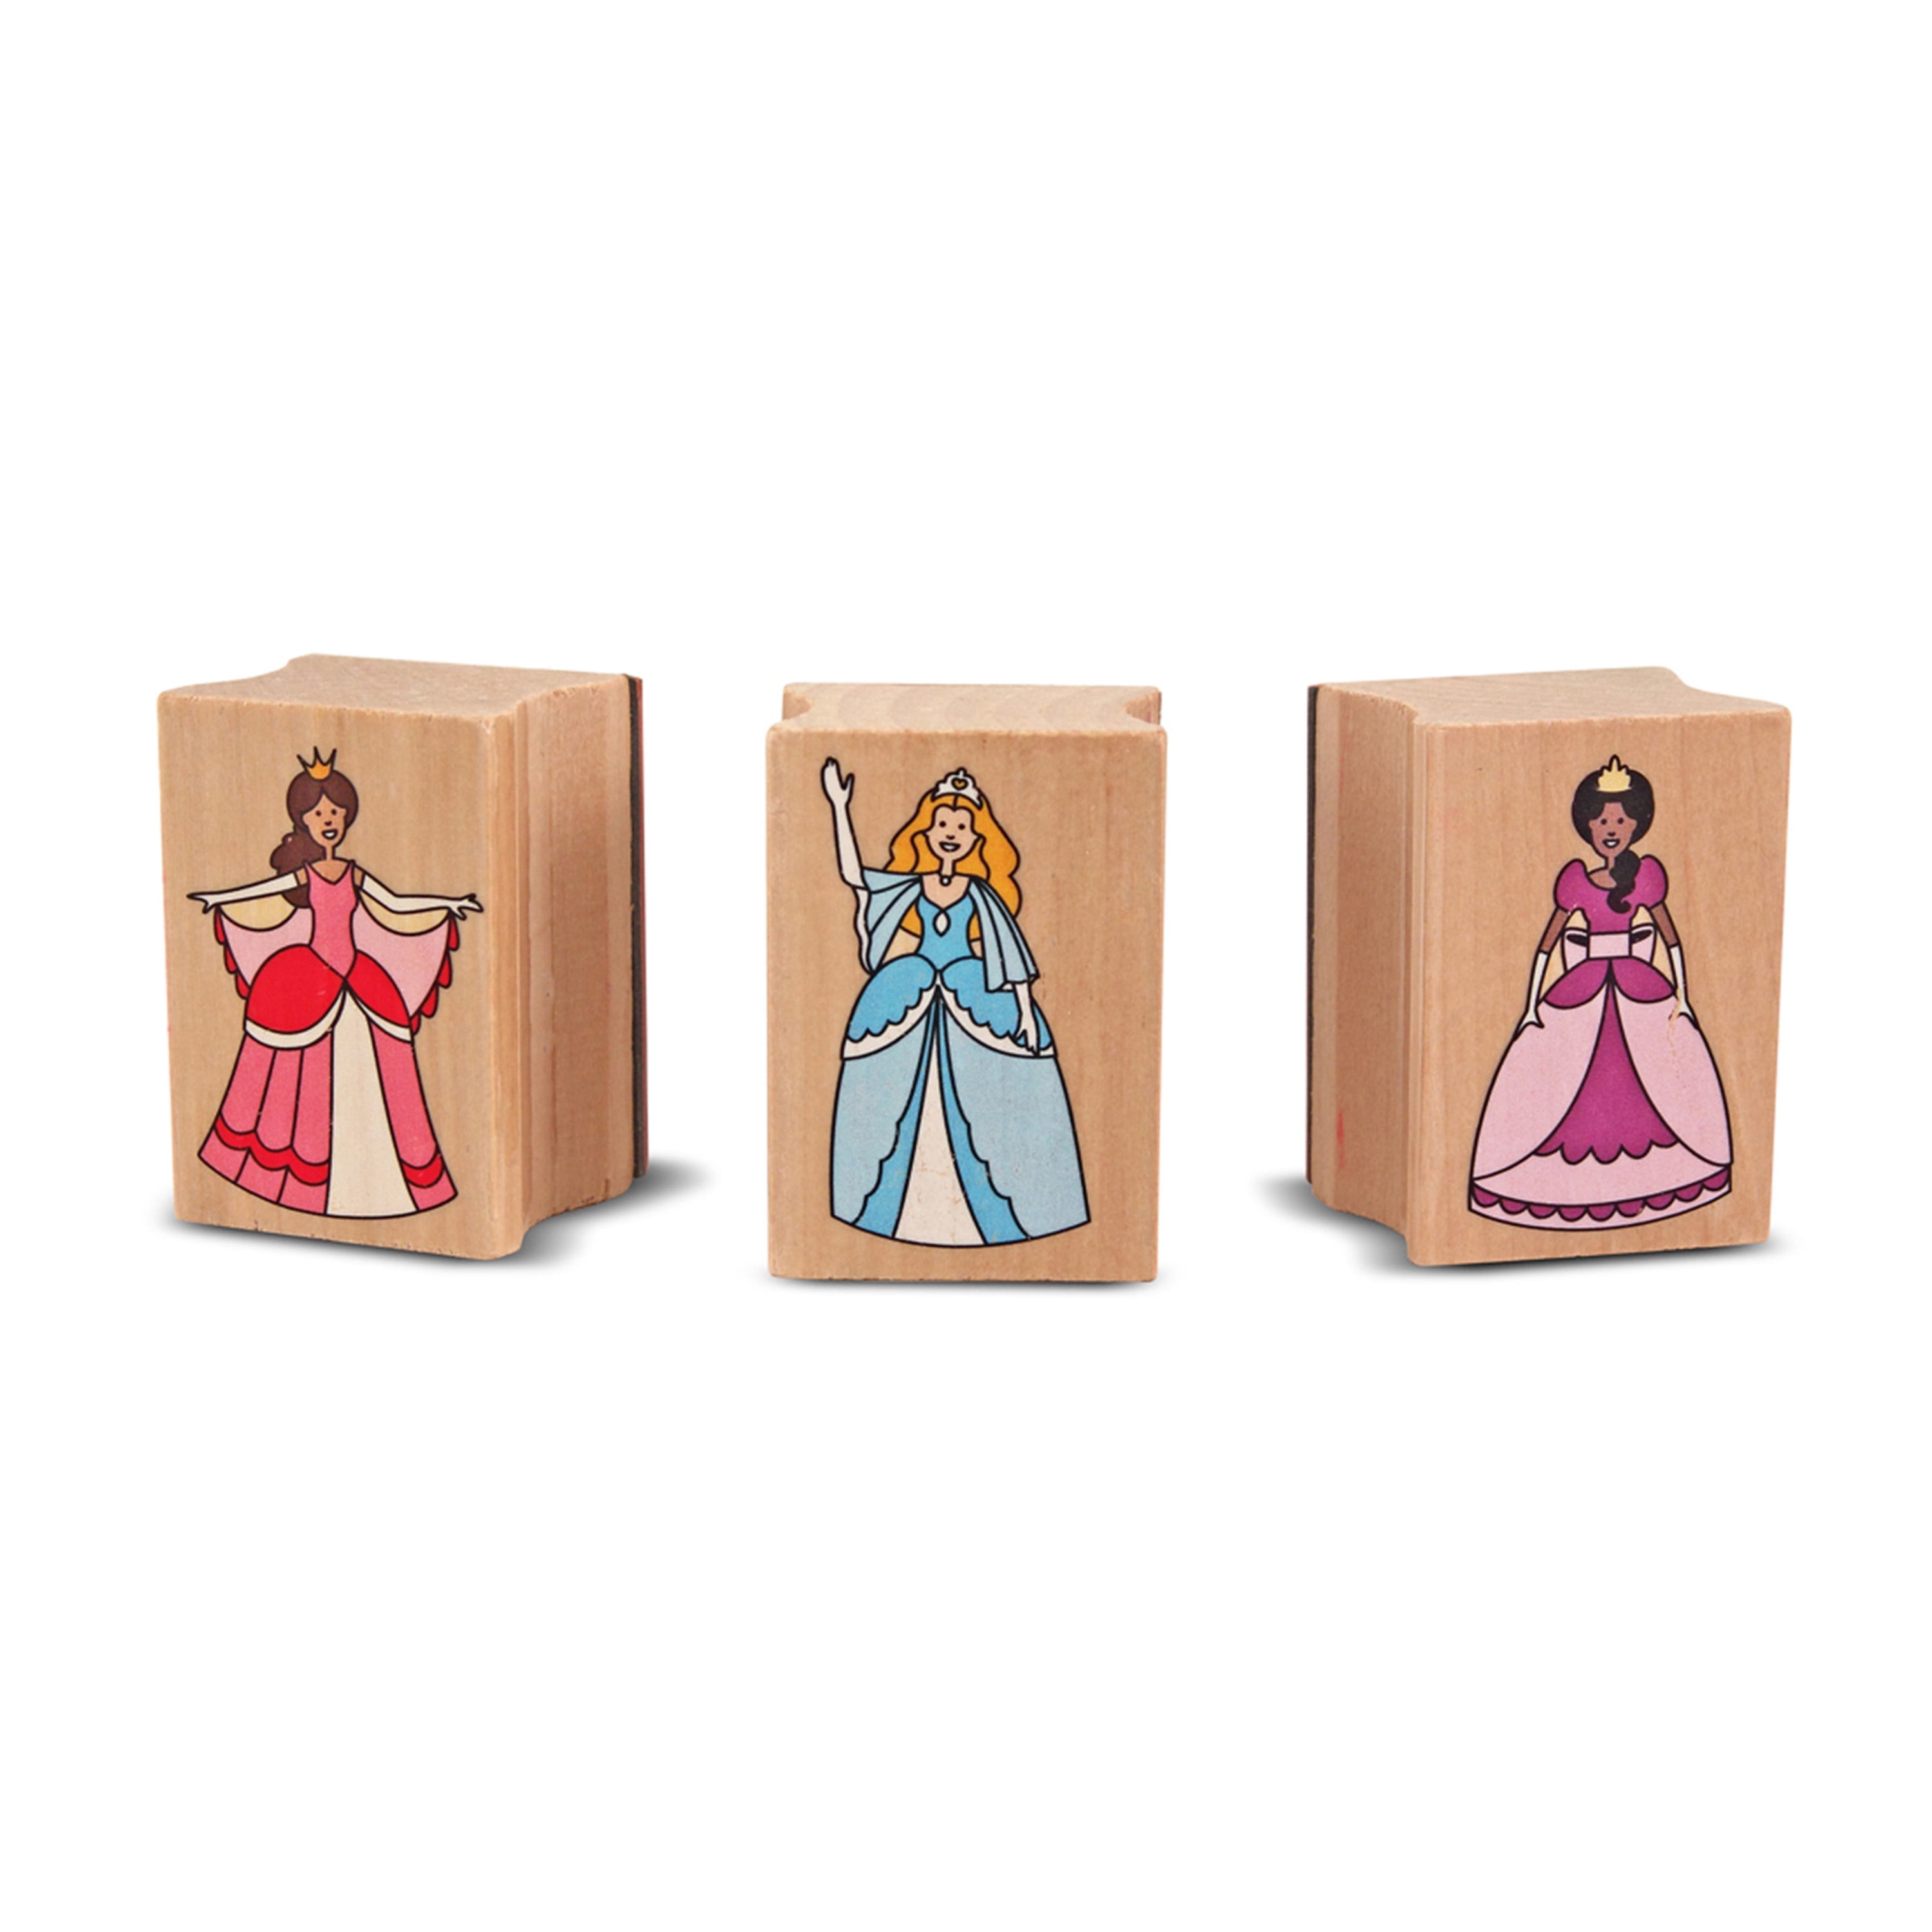 Melissa & Doug - Disney Princess Wooden Stamp Set – RG Natural Babies and  Toys